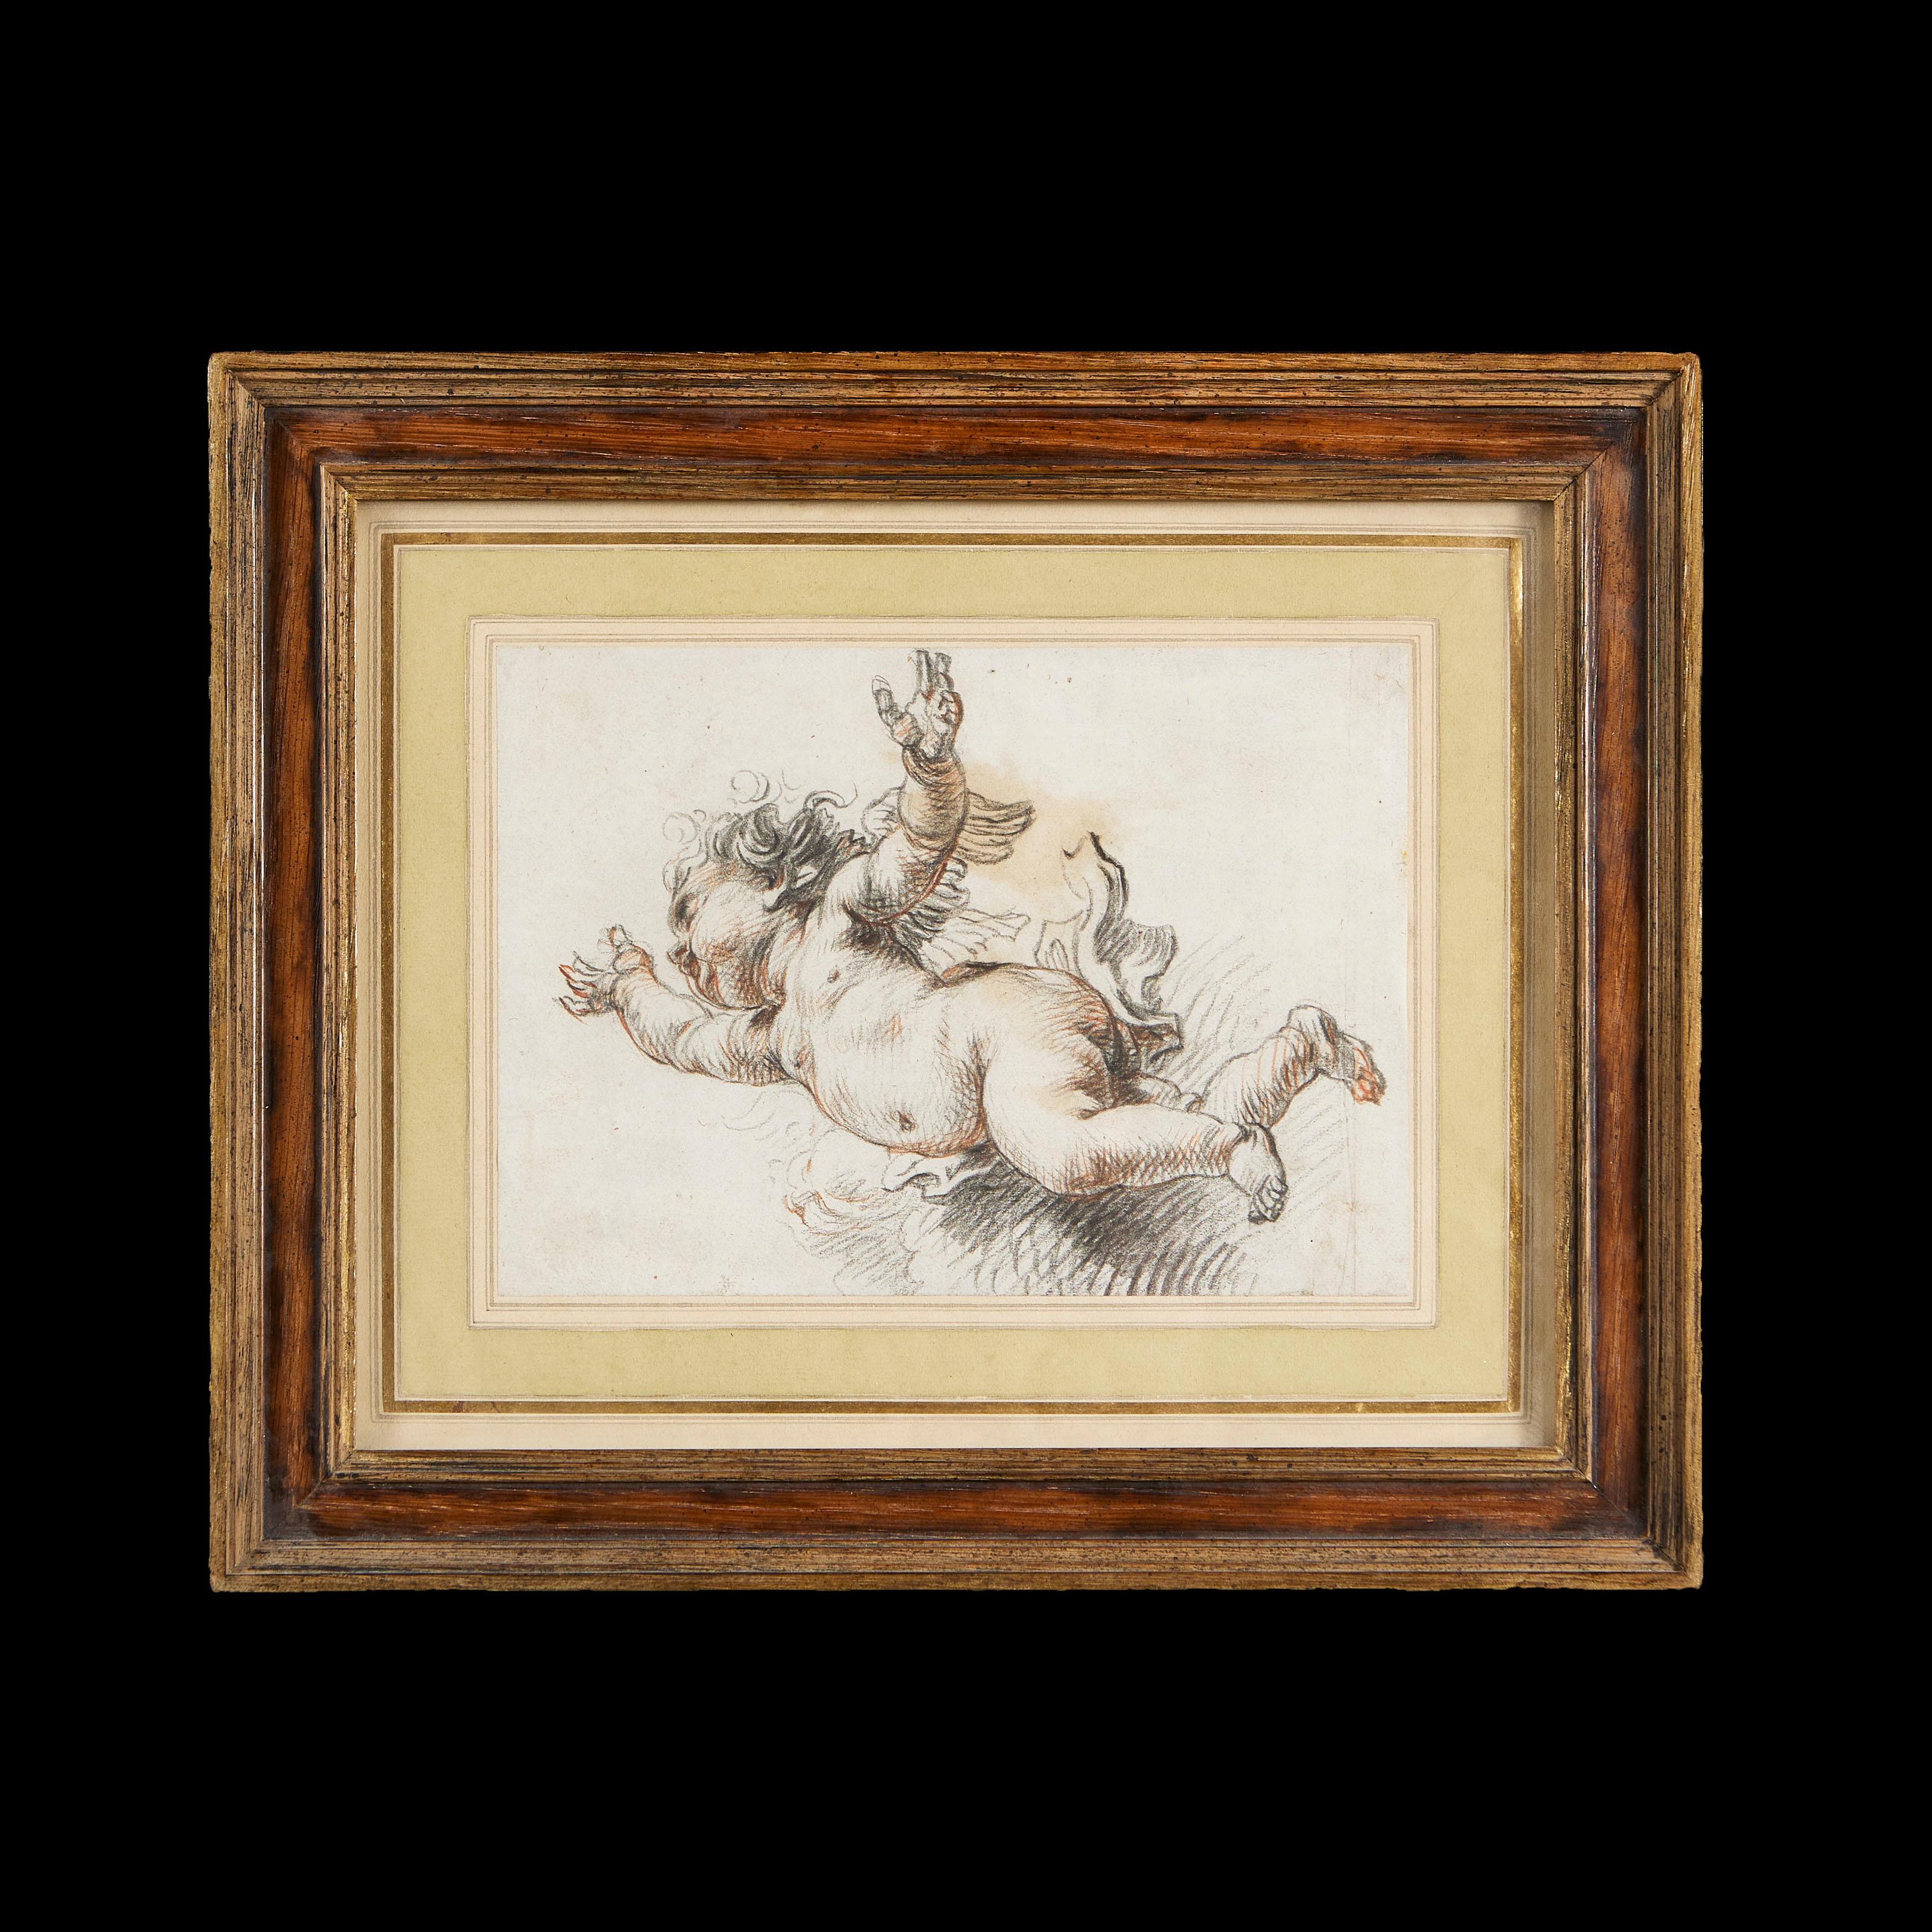 Italien, um 1750

Eine Zeichnung aus der Mitte des 18. Jahrhunderts, die einen geflügelten Putto mit ausgestreckten Armen in der Art von Michelangelo darstellt. Ausgeführt in schwarzer und roter Kreide. Gerahmt und verglast.

Maße: Höhe